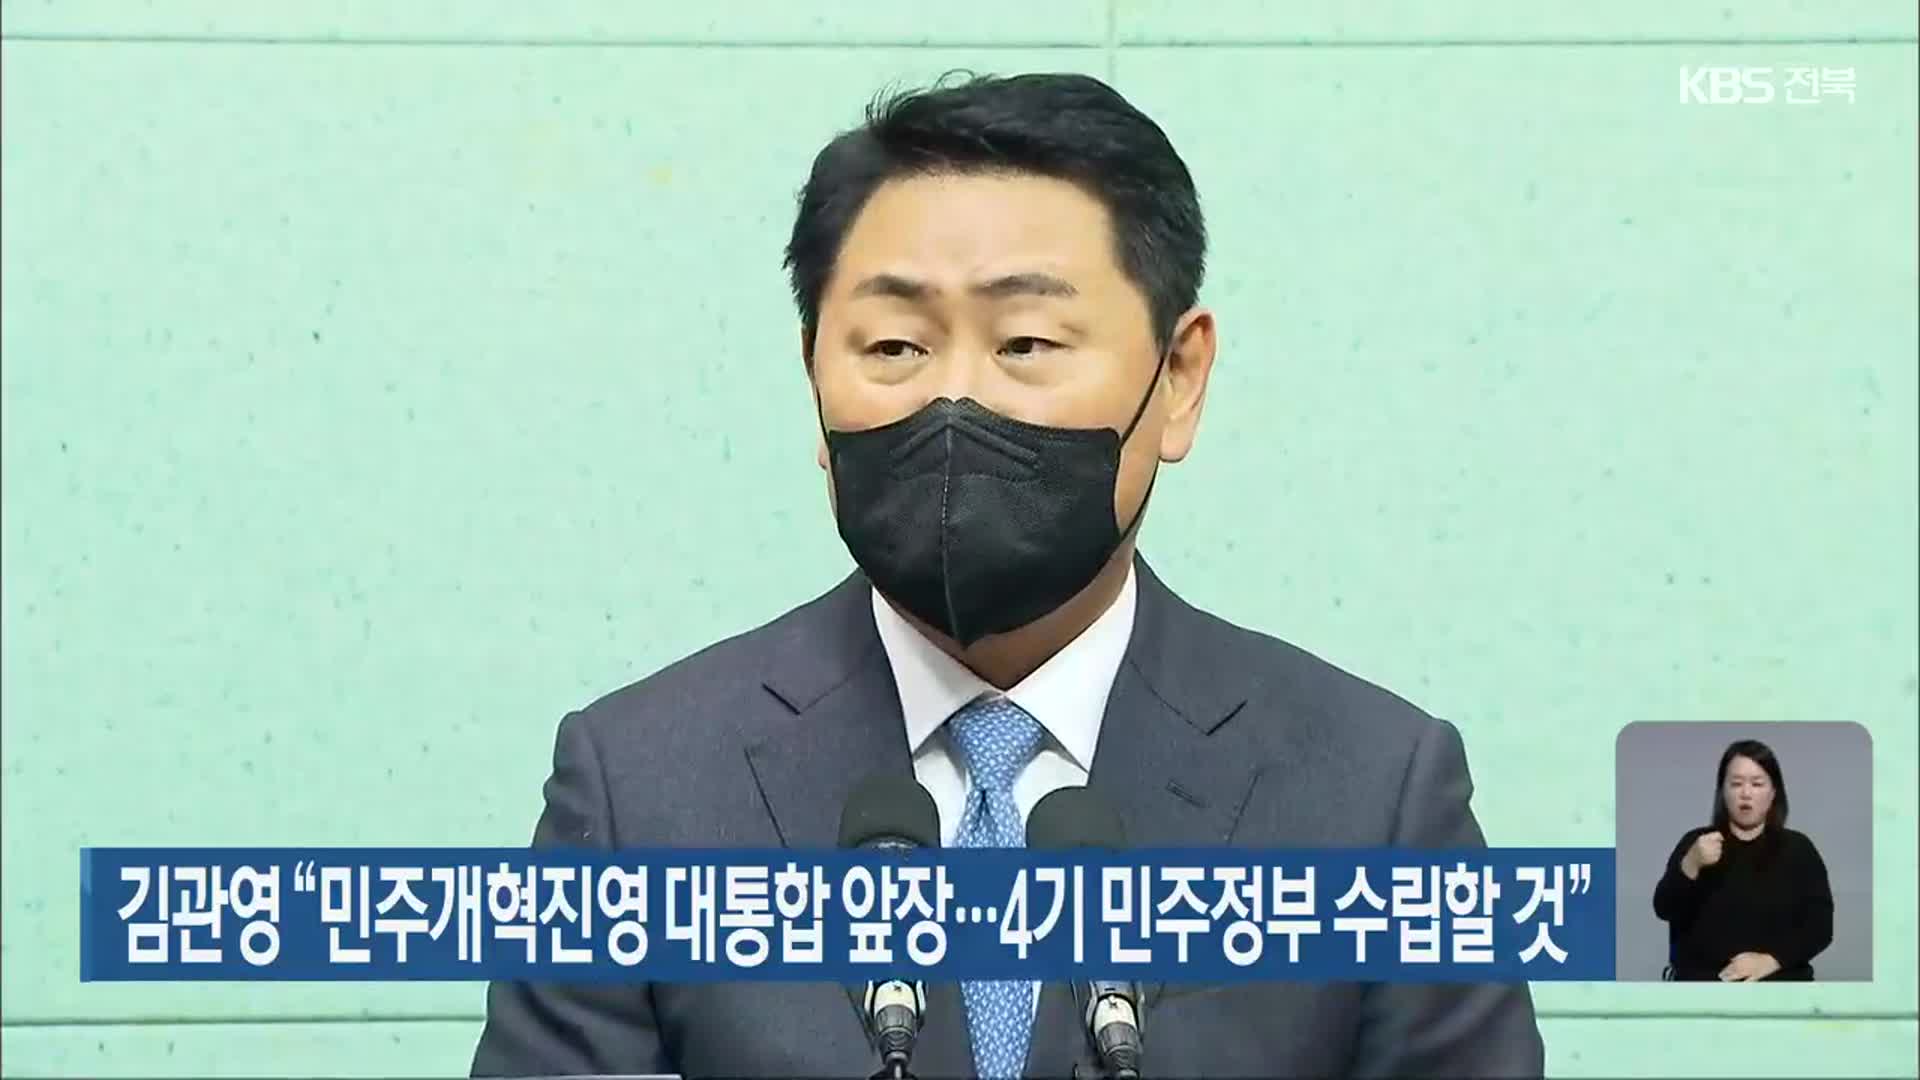 김관영 “민주개혁진영 대통합 앞장…4기 민주정부 수립할 것”